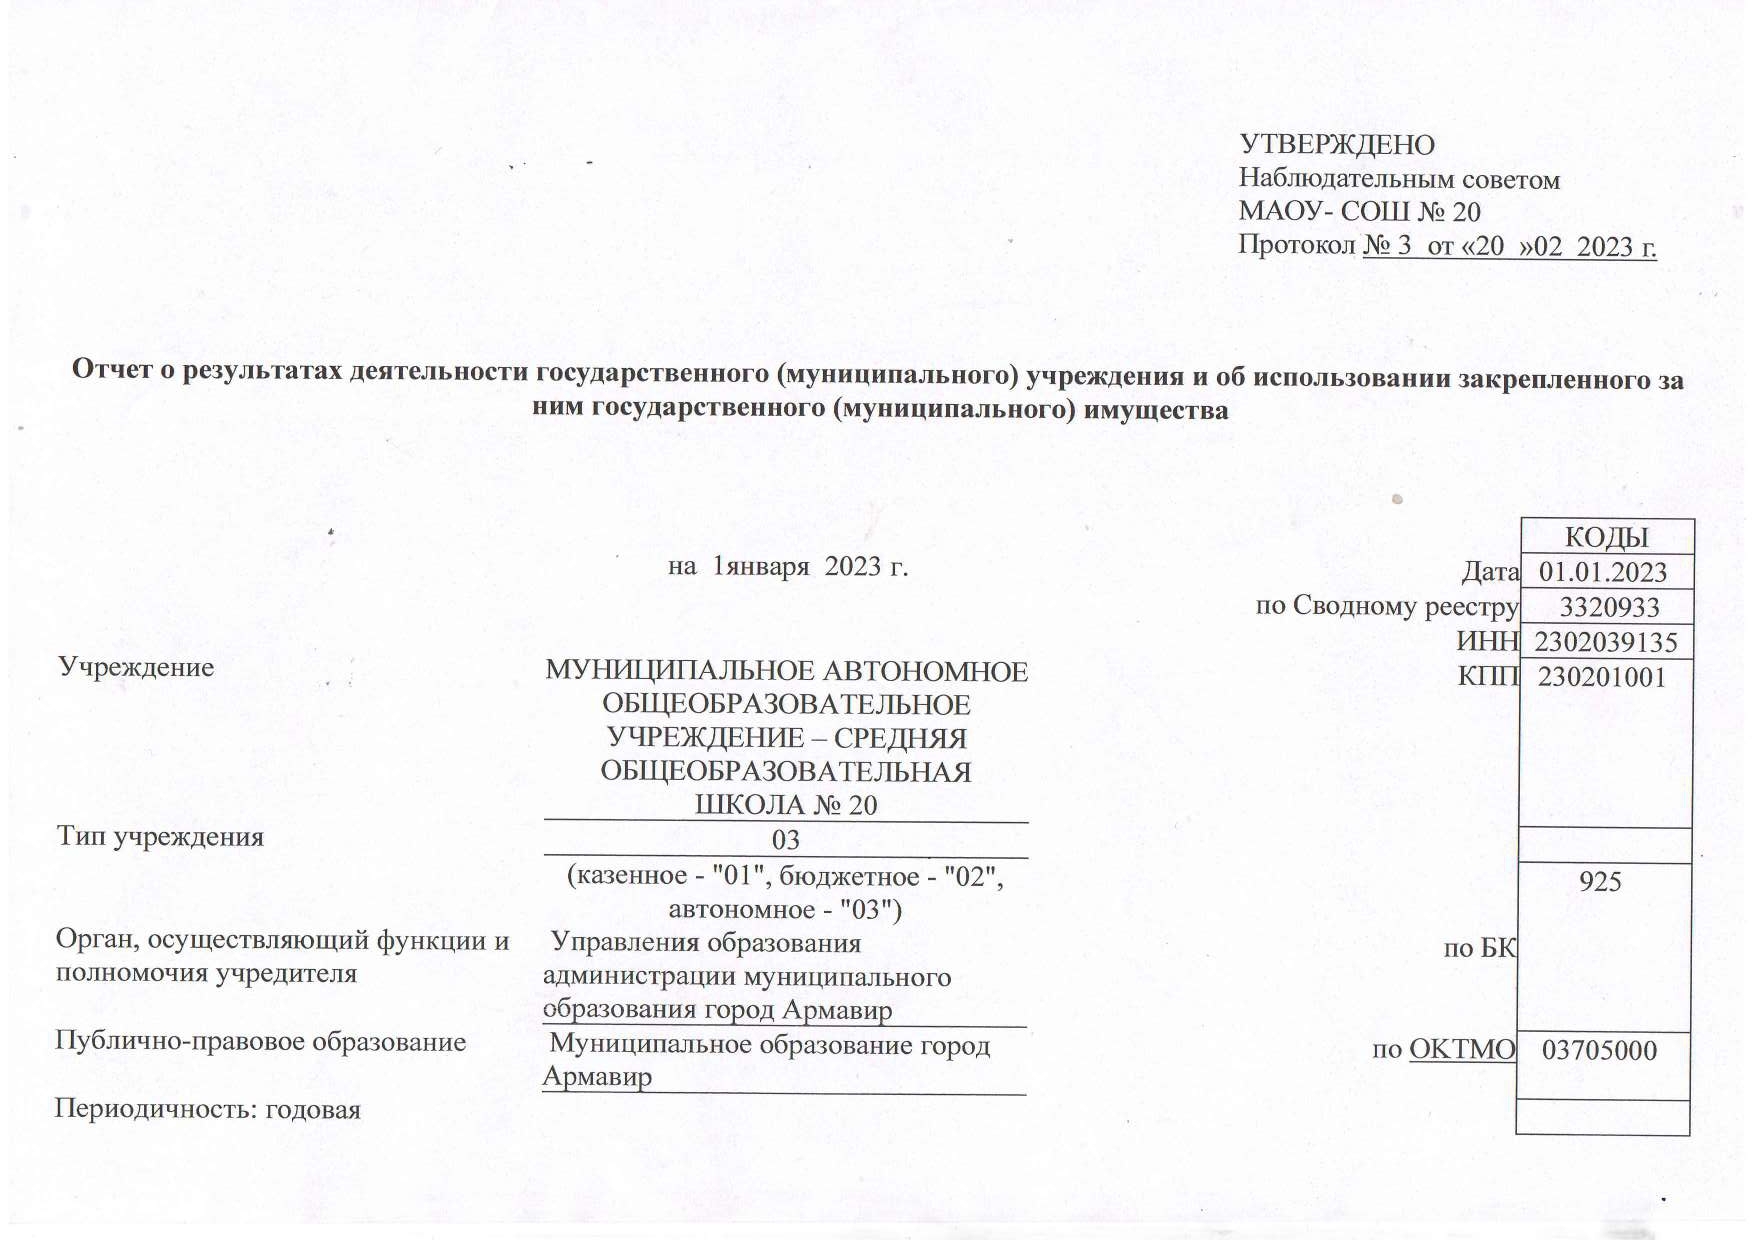 Отчет о результатах деятельности муниципального учреждения на 01.01.2023 г_page-0001.jpg